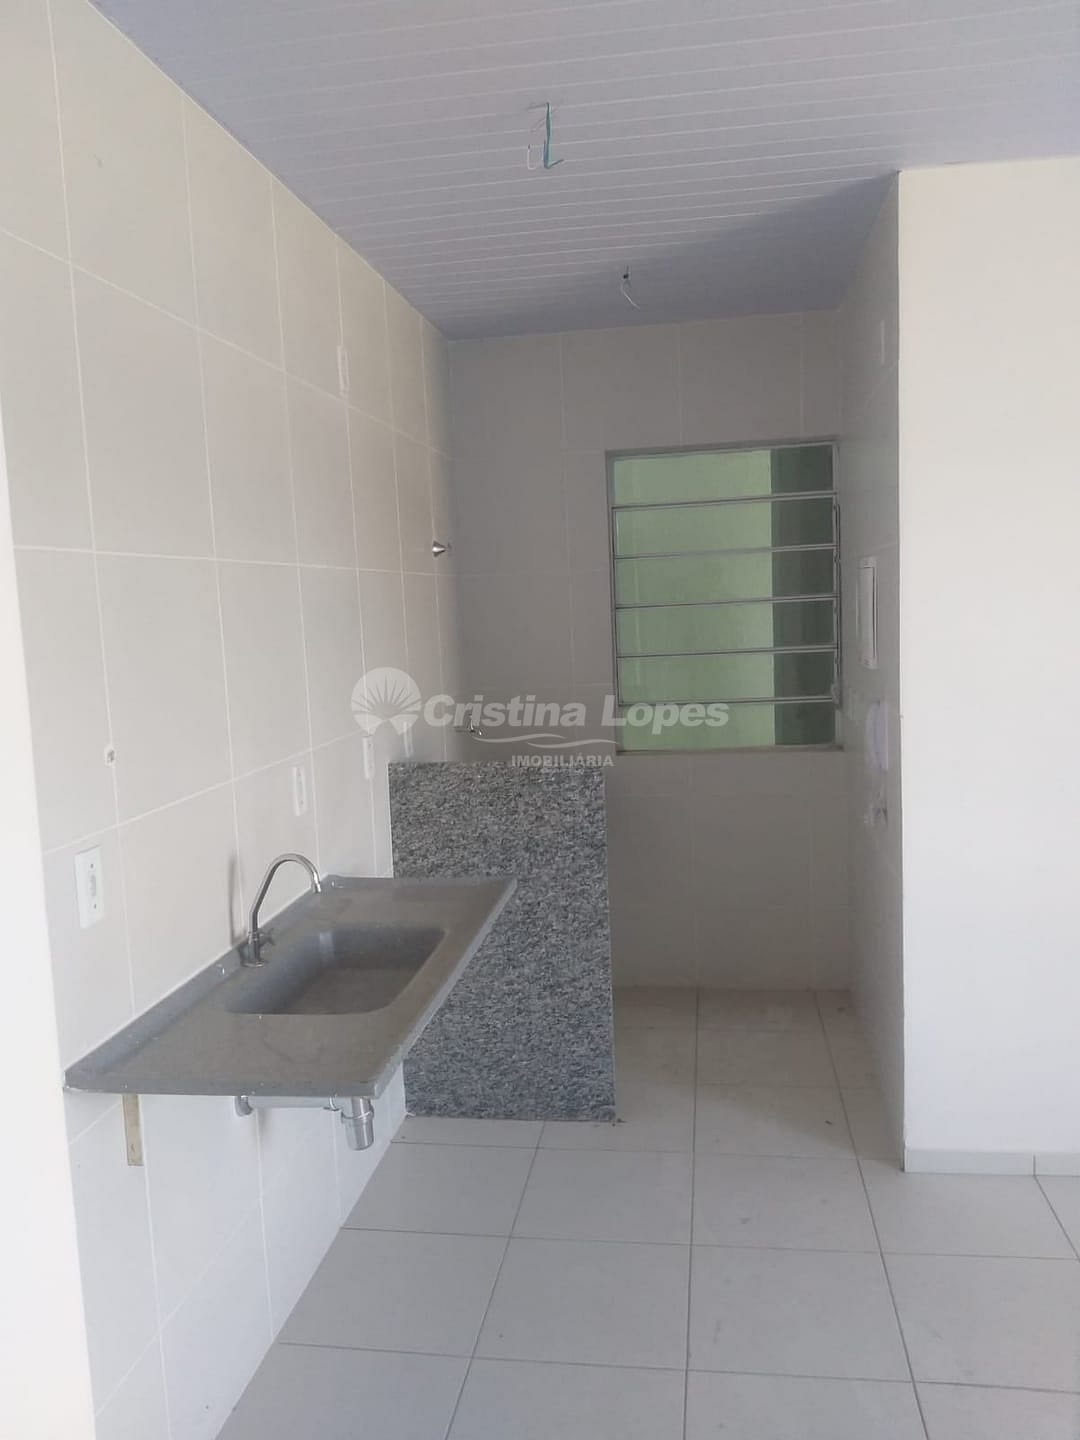 Apartamento em Novo Horizonte, Teresina/PI de 59m² 3 quartos à venda por R$ 209.000,00